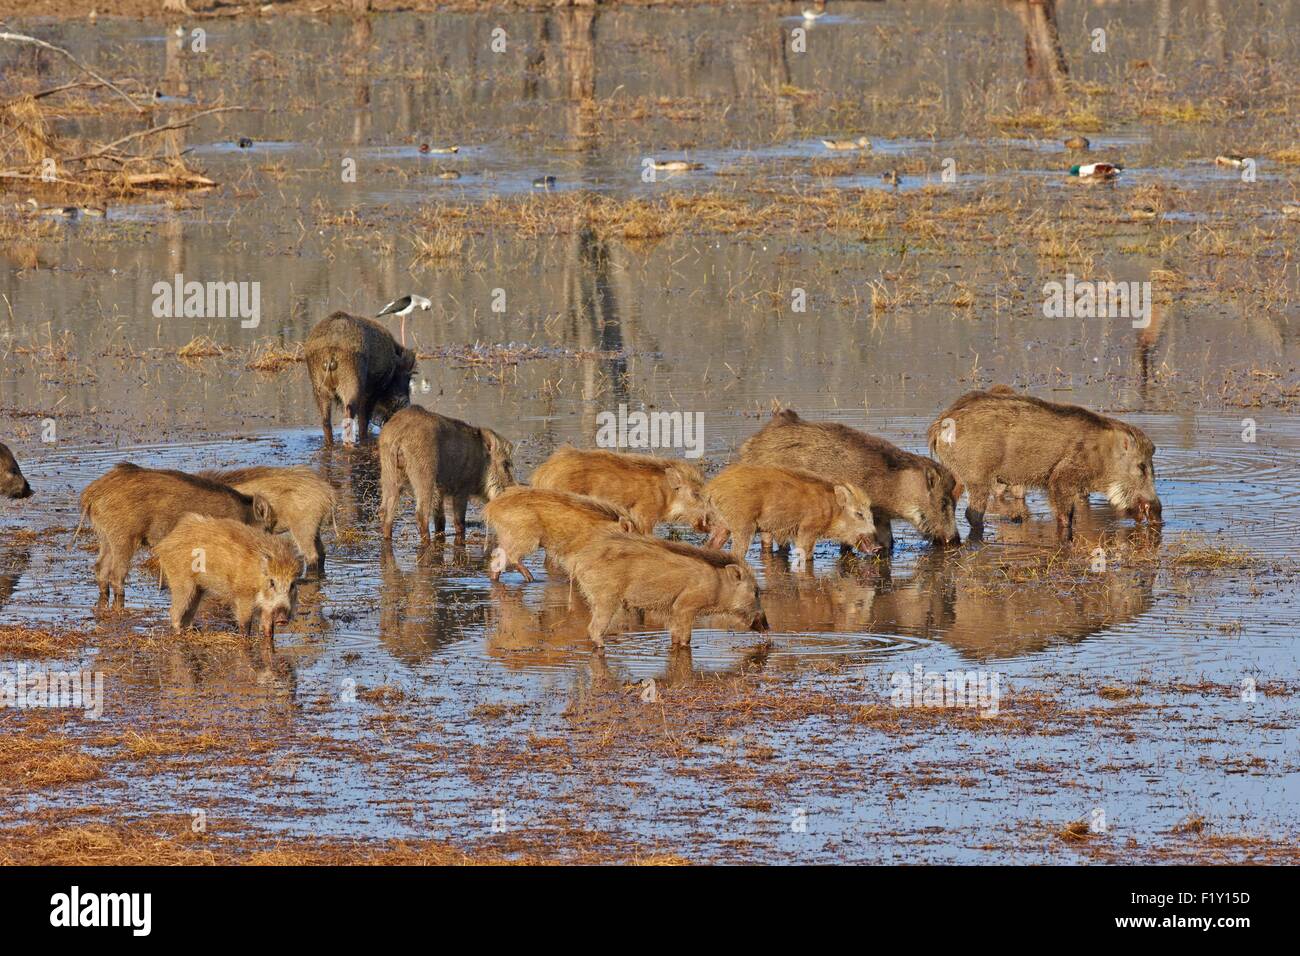 L'Inde, Rajasthan, le parc national de Ranthambore, sanglier ou sanglier (Sus scrofa affinis), groupe qui se nourrissent de plantes aquatiques dans un marsch Banque D'Images